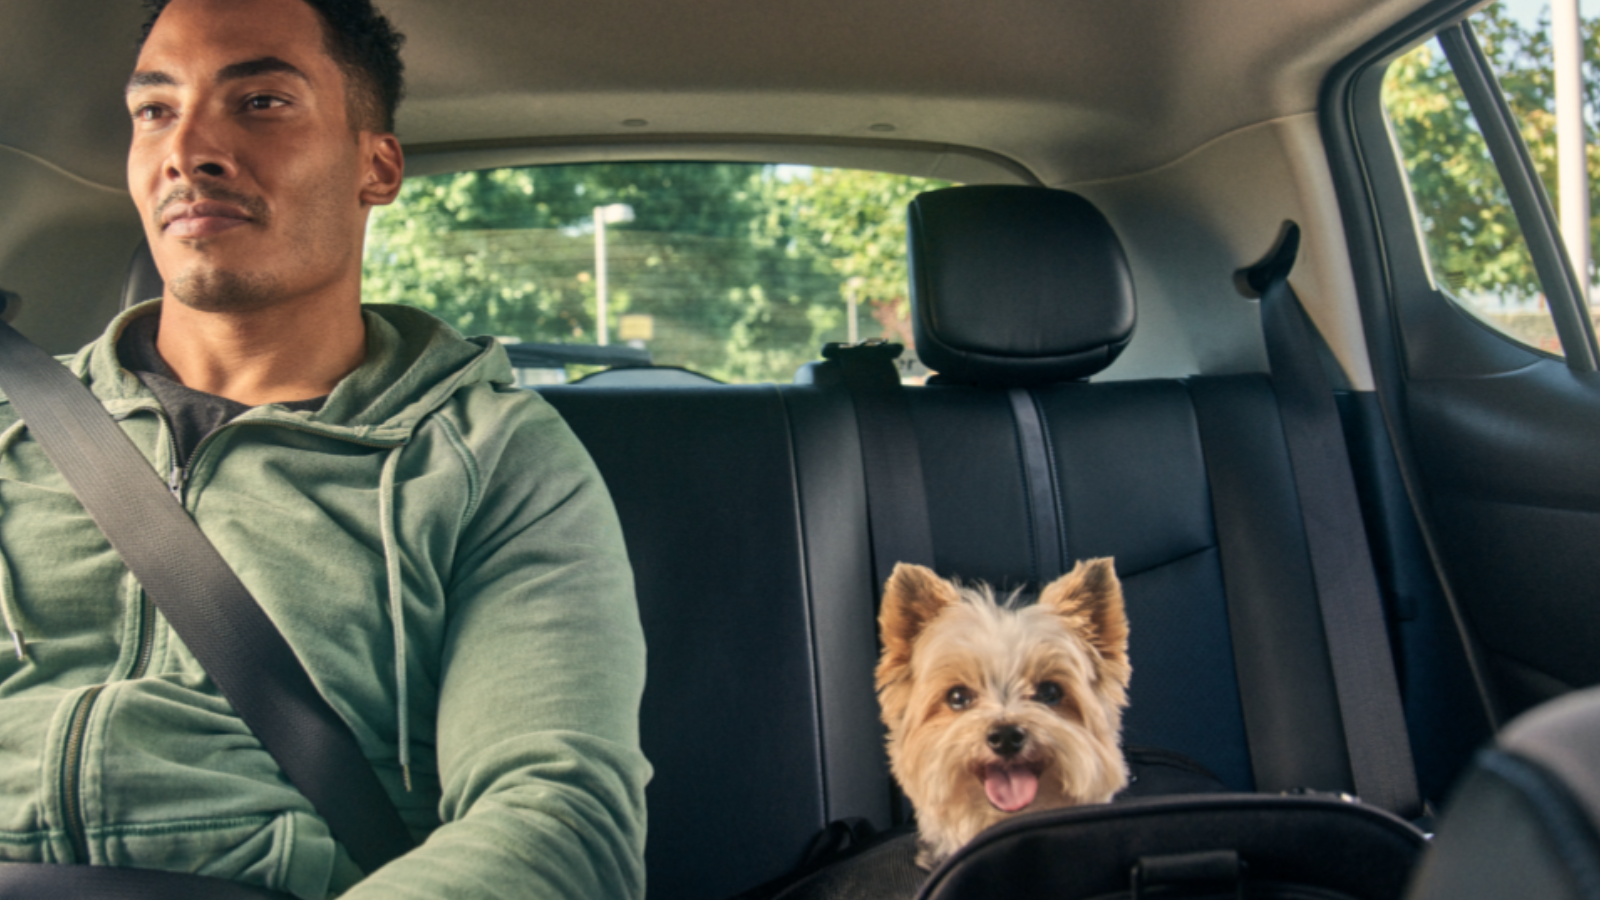 Uber pet chega em sp e rj para transportar seu animal de estimação. Ao lado de seus tutores, cães e gatos terão mais conforto e segurança com o uber pet. Conheça mais detalhes sobre esse serviço!